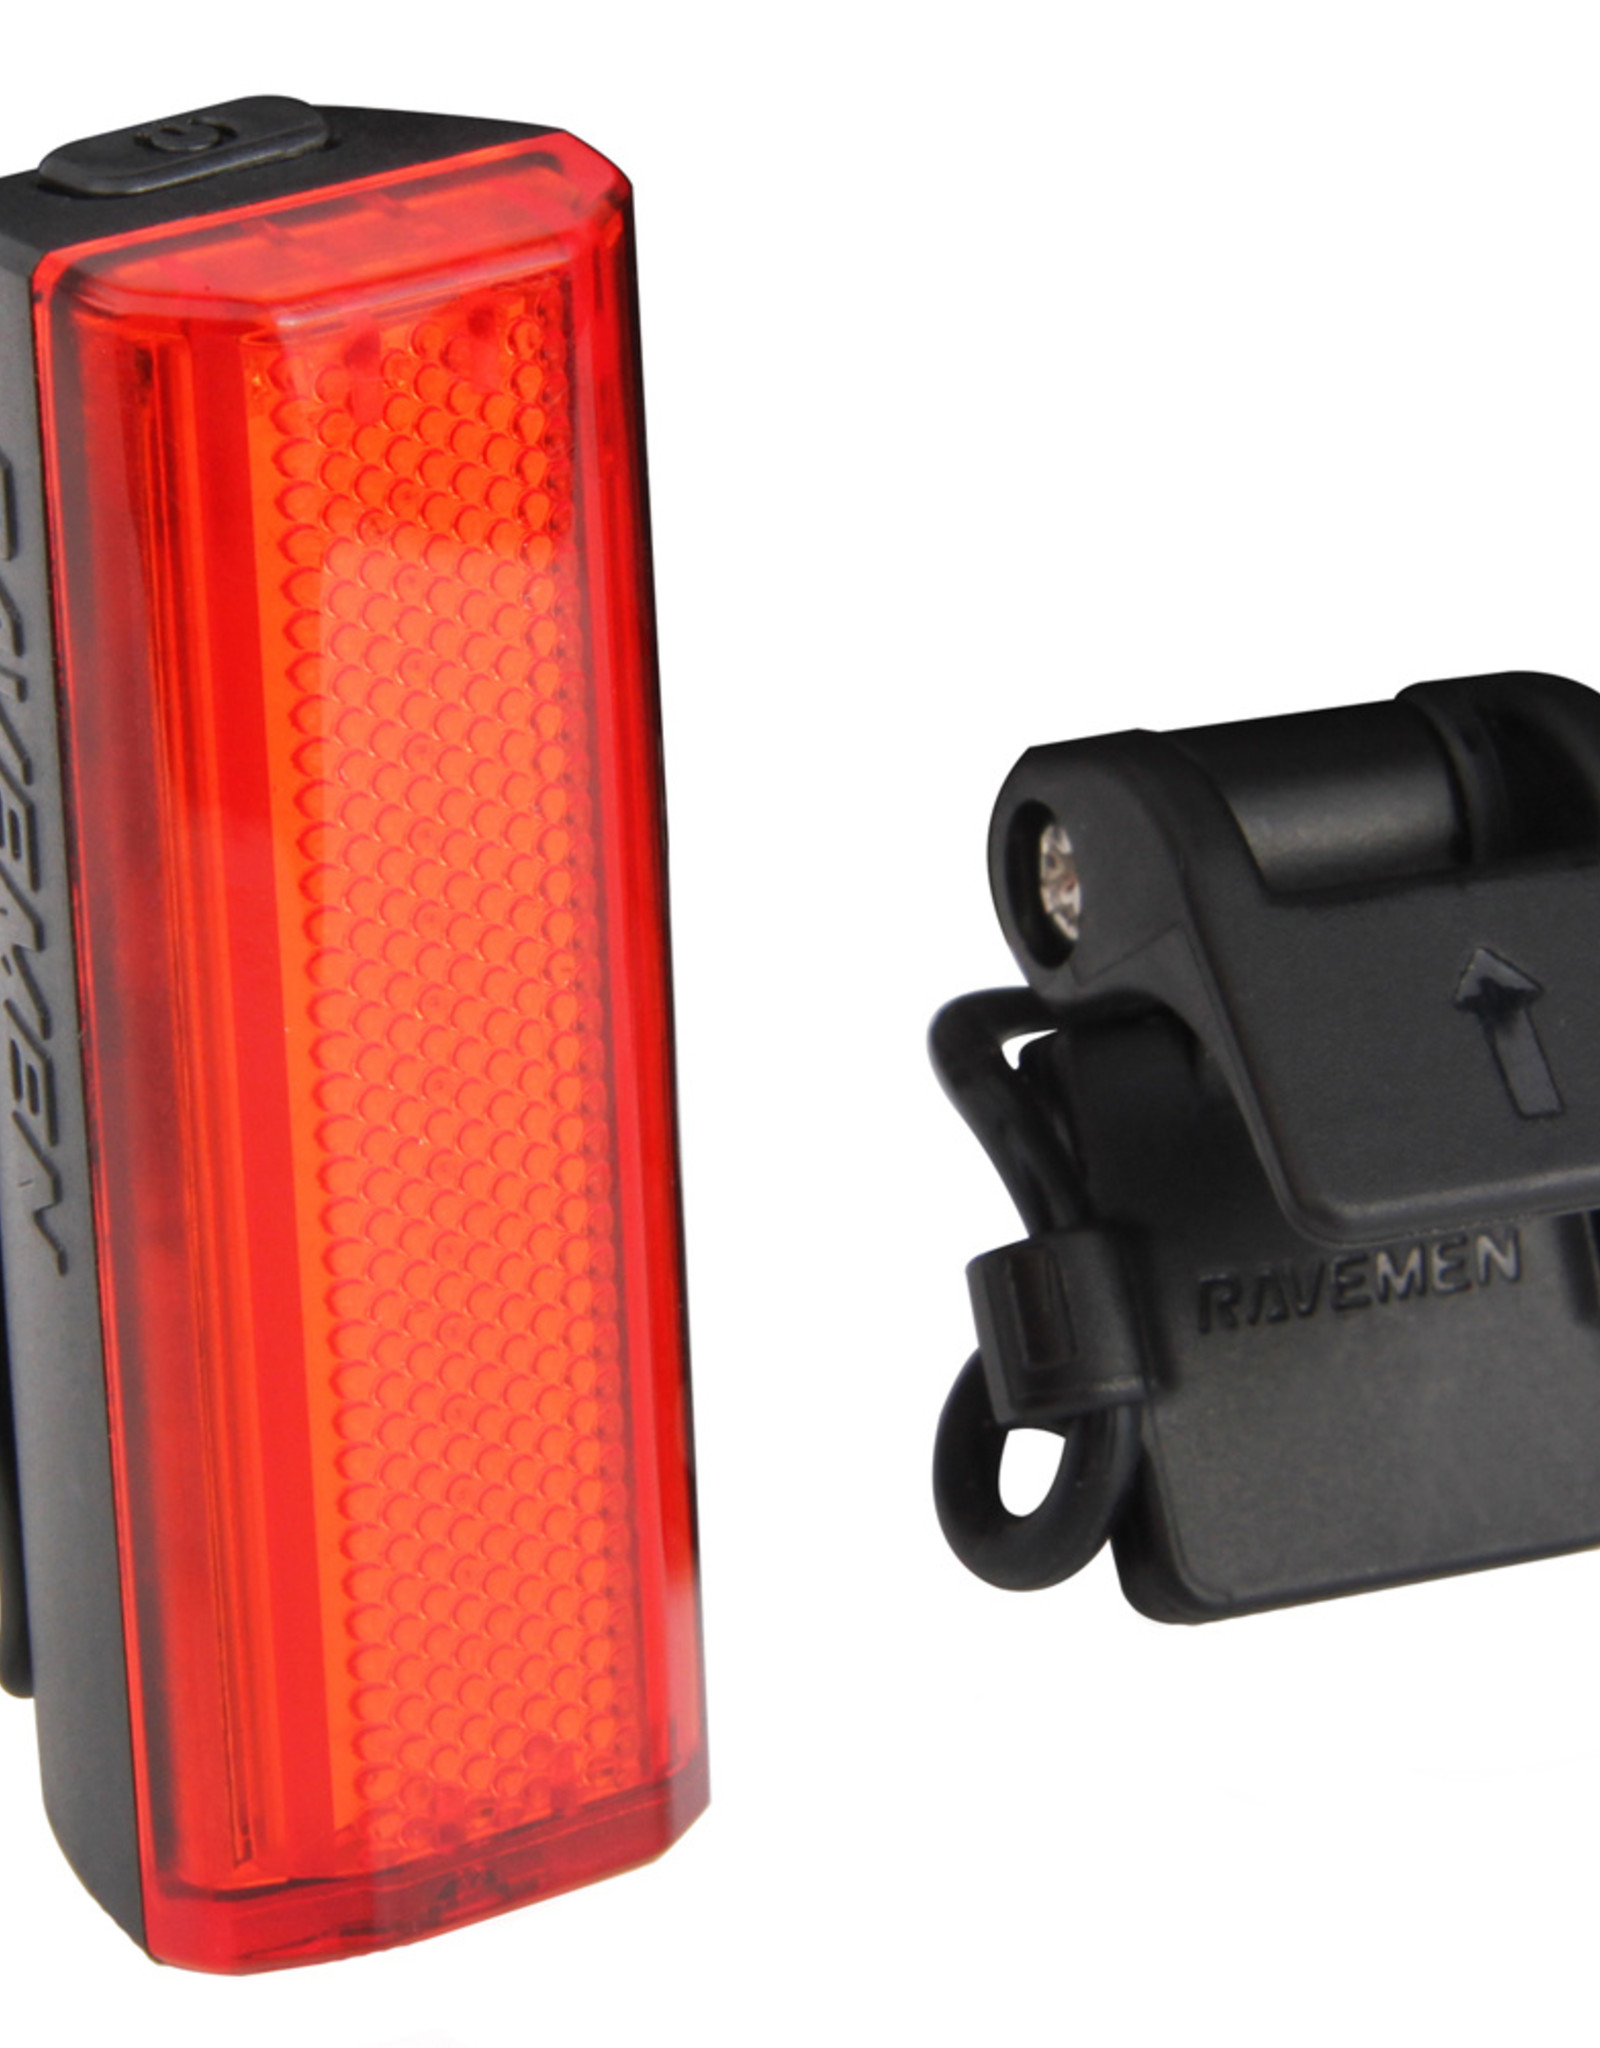 Ravemen TR20 USB Rechargeable Rear Light in Black (20 Lumens)